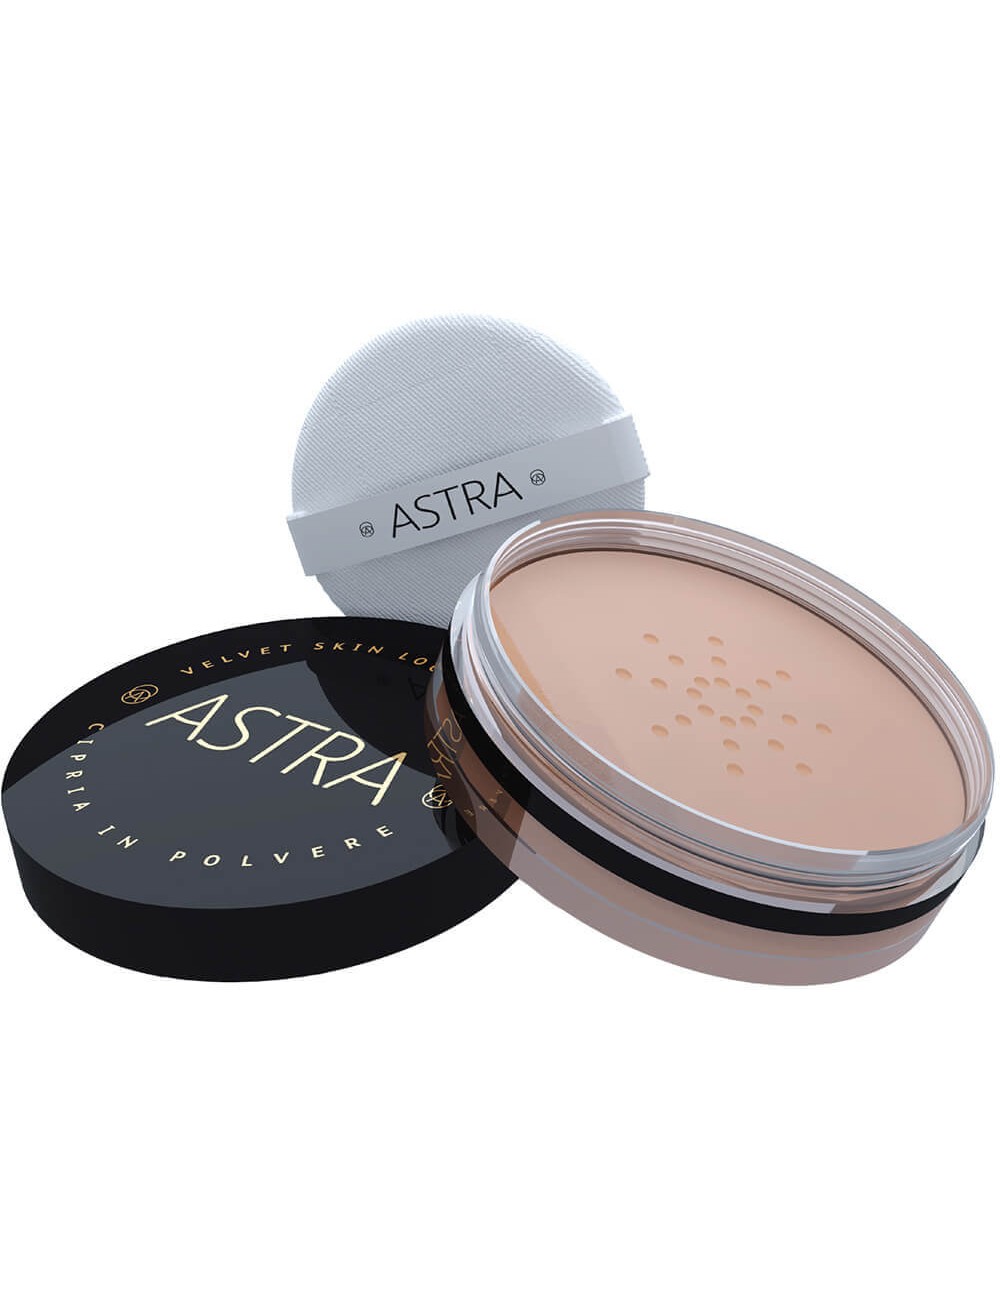 Astra Velvet Skin - Loose Powder Cipria in polvere - 02